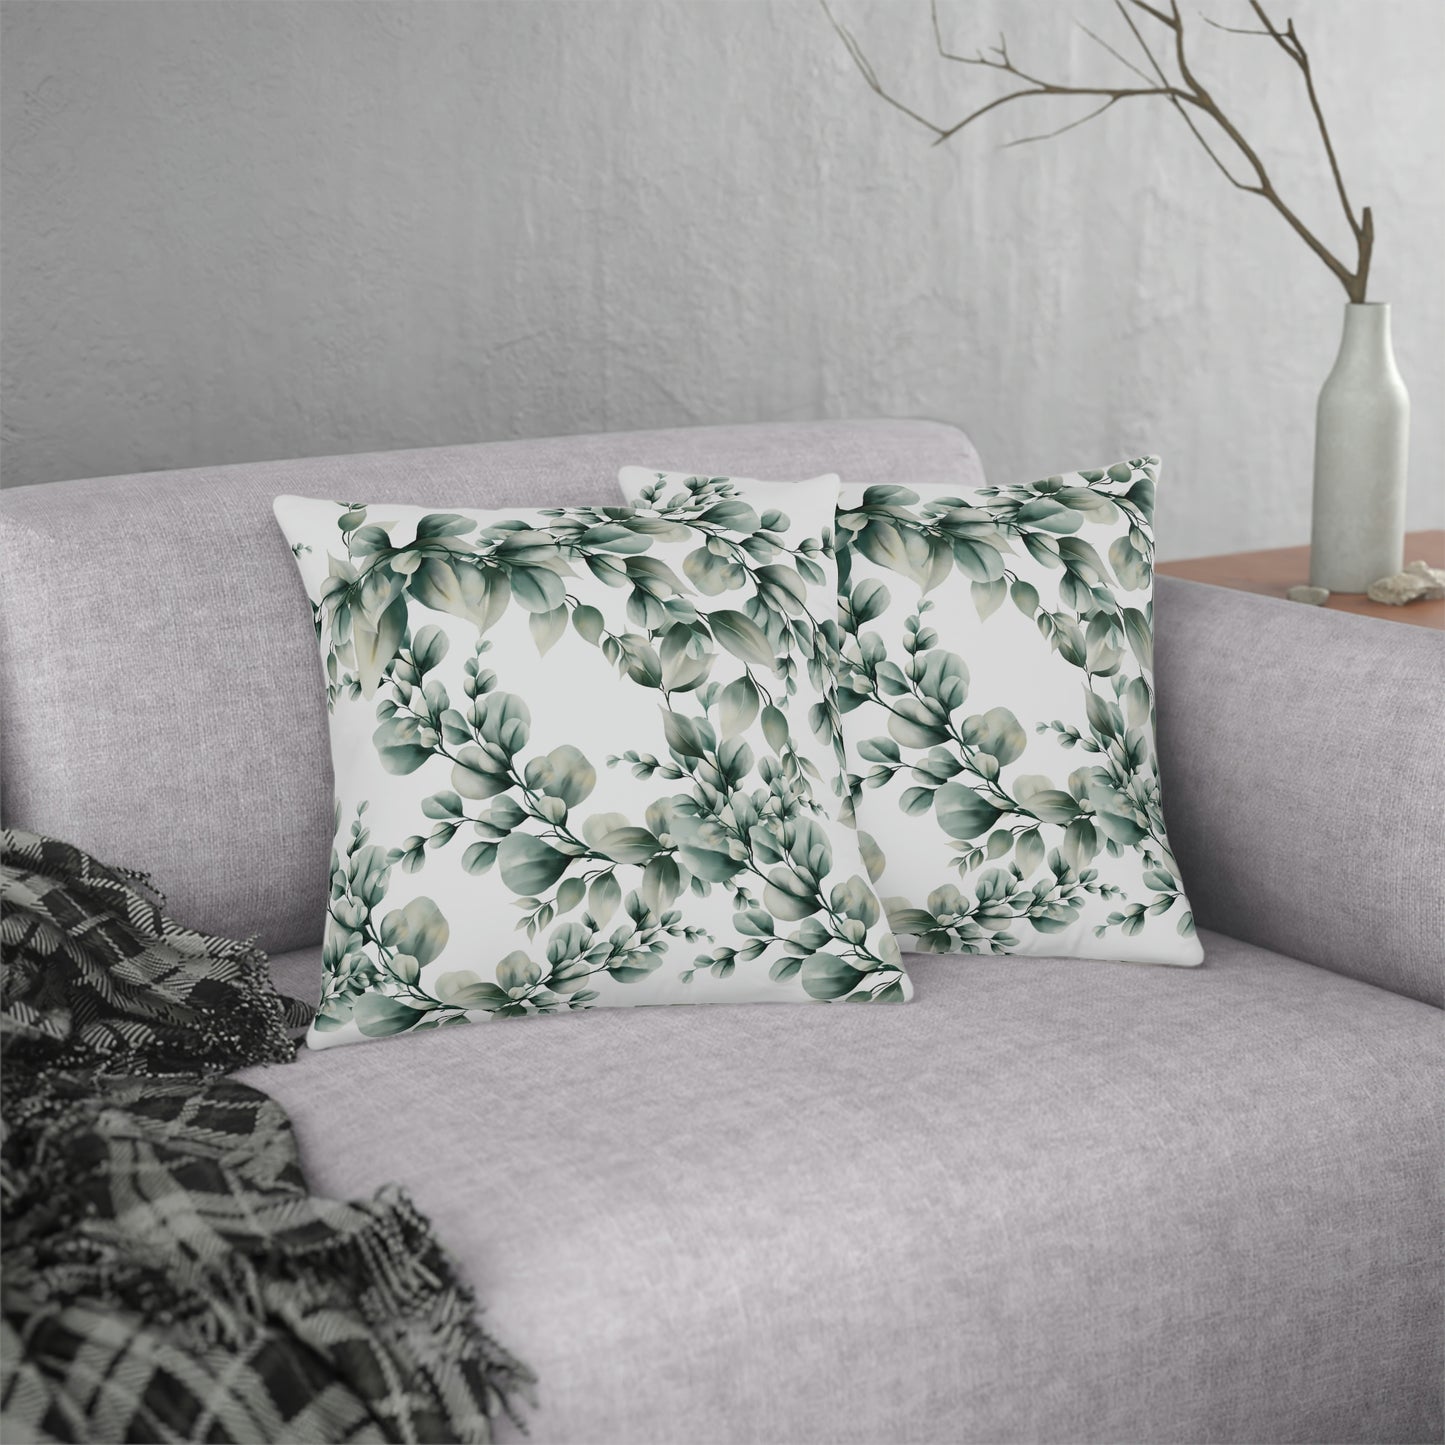 Eucalyptus Print Pillow / Eucalyptus Decor / Outdoor Patio Pillow / Waterproof Pillow